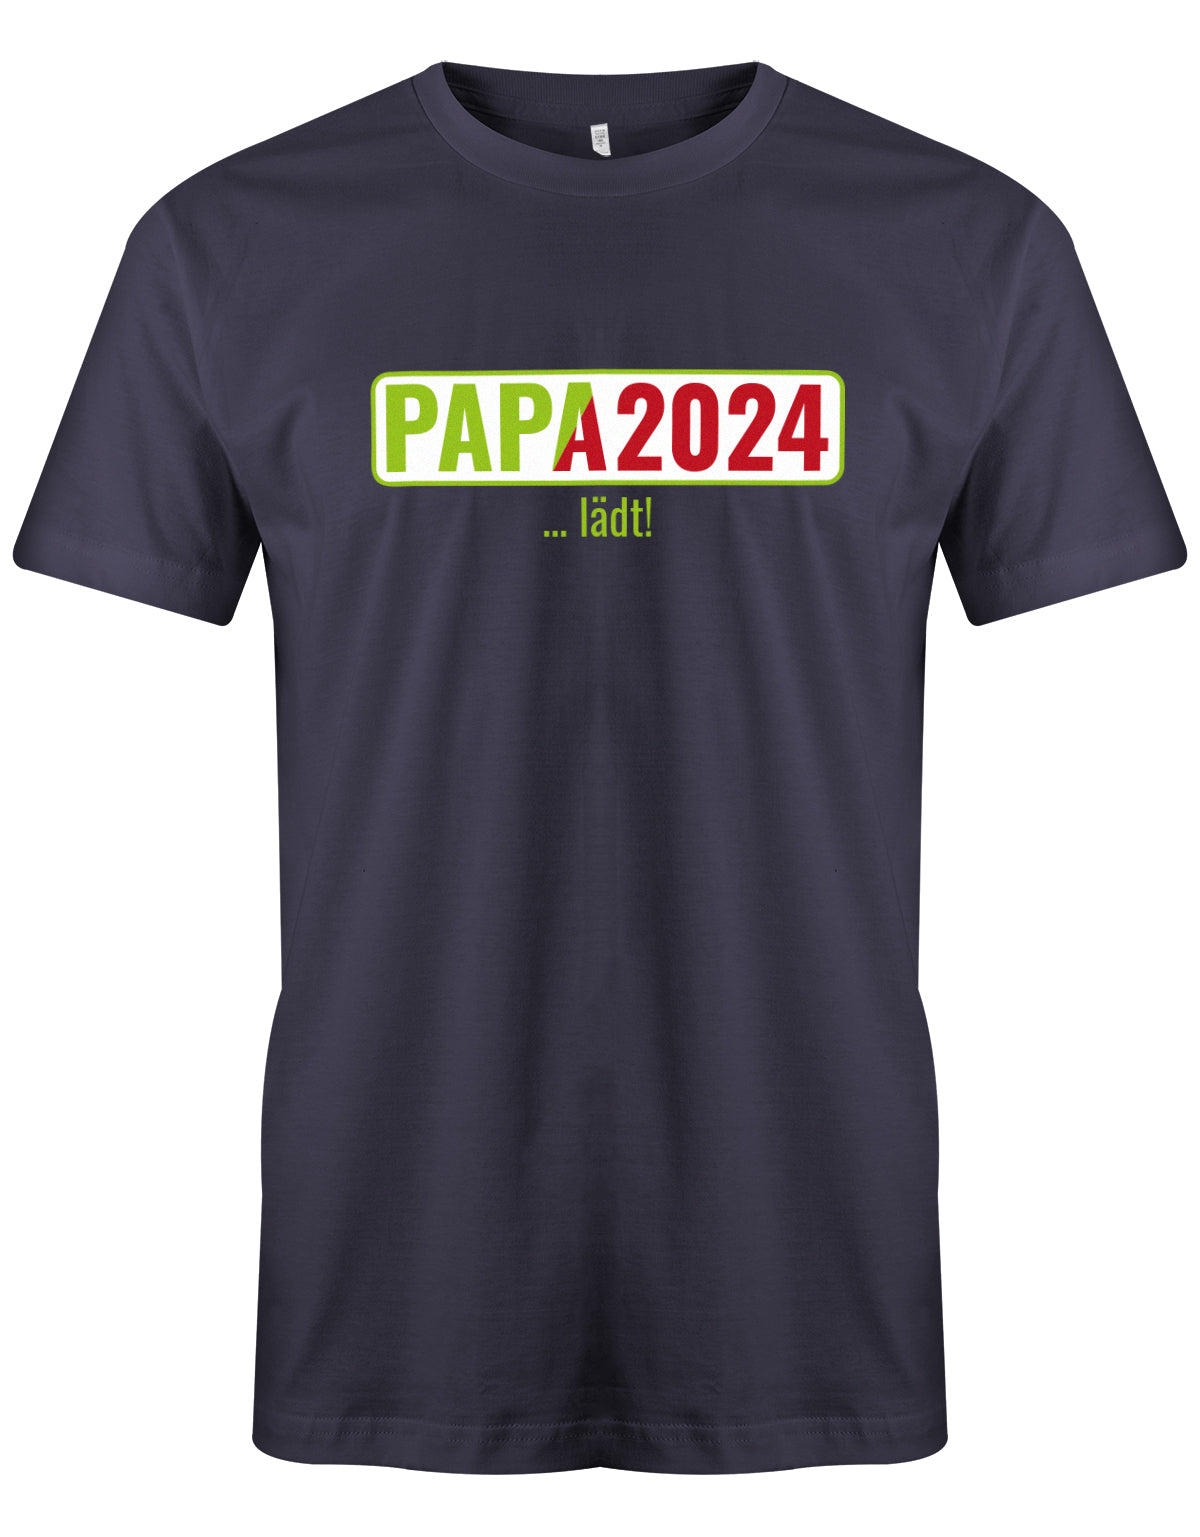 Papa 2024 lädt - loading - Werdender Papa Shirt Herren Navy